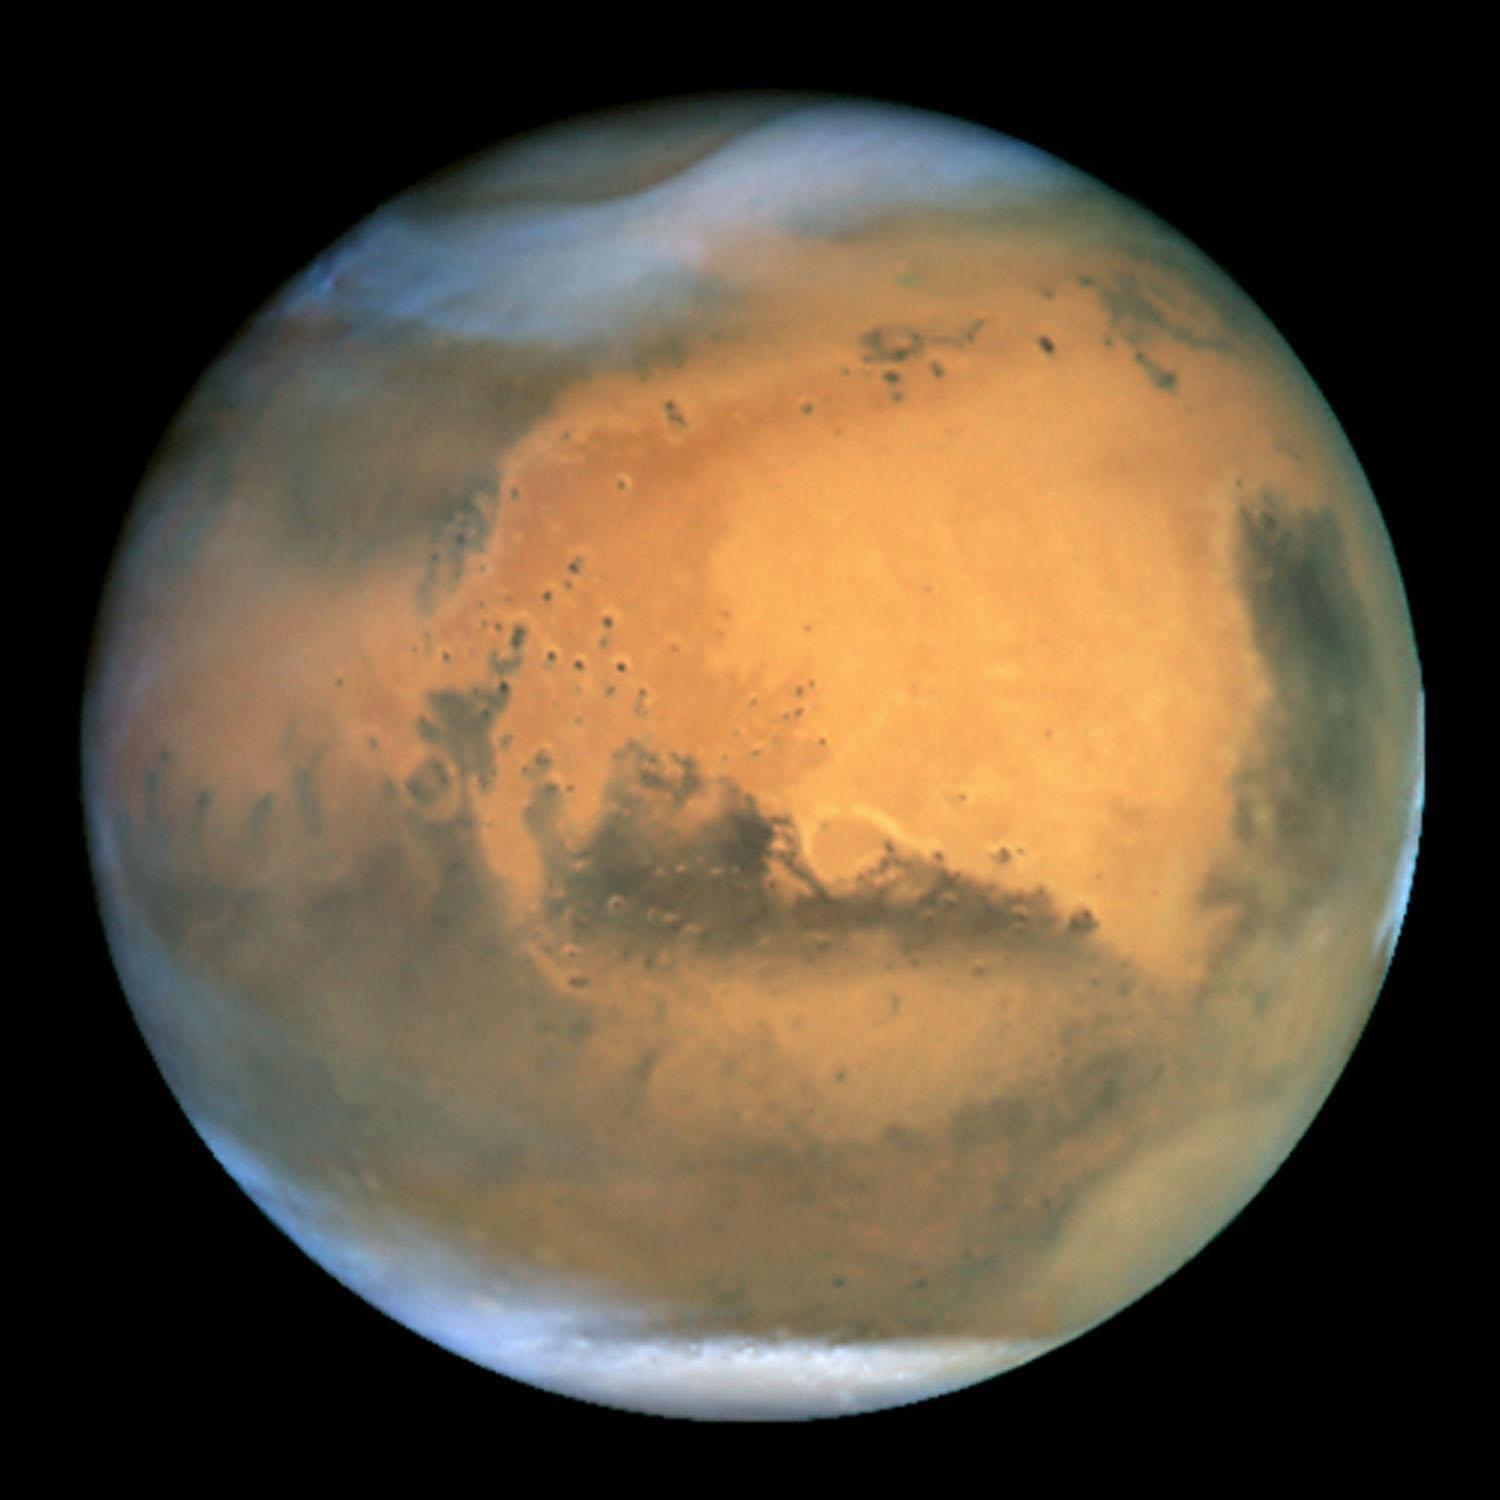 Nu kan forskarna kanske lära sig mer om förutsättningarna för liv på Mars.